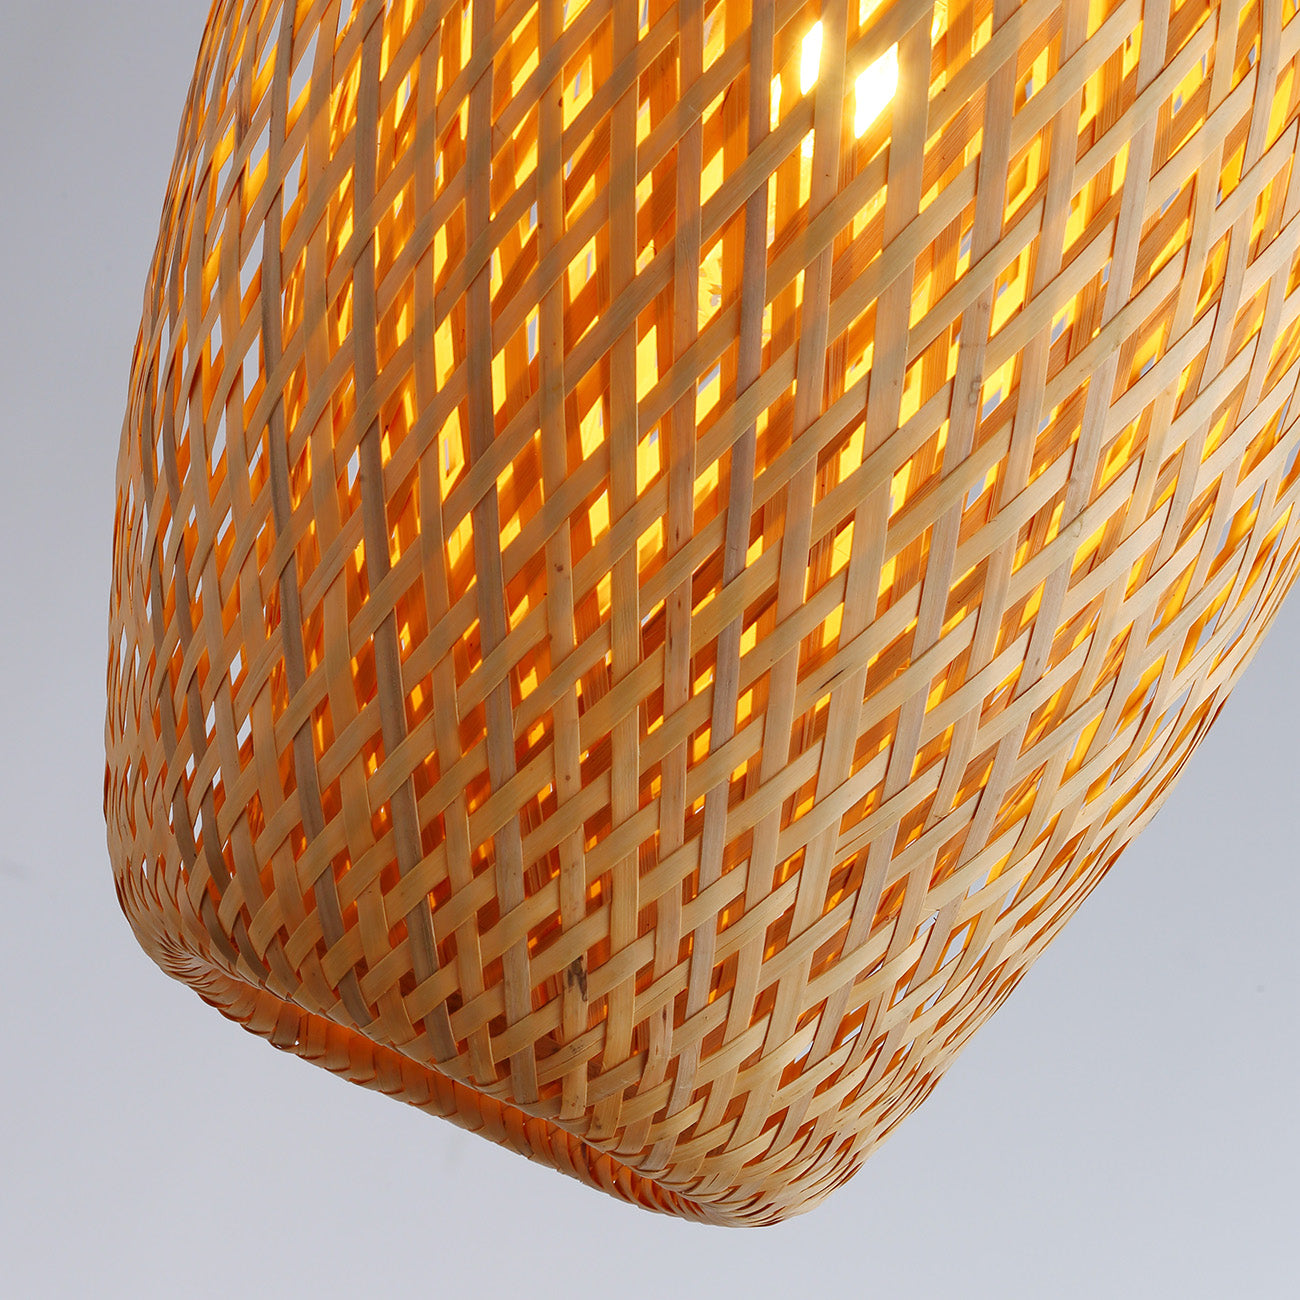 1-Light Lantern Bamboo Weaving Pendant Lighting